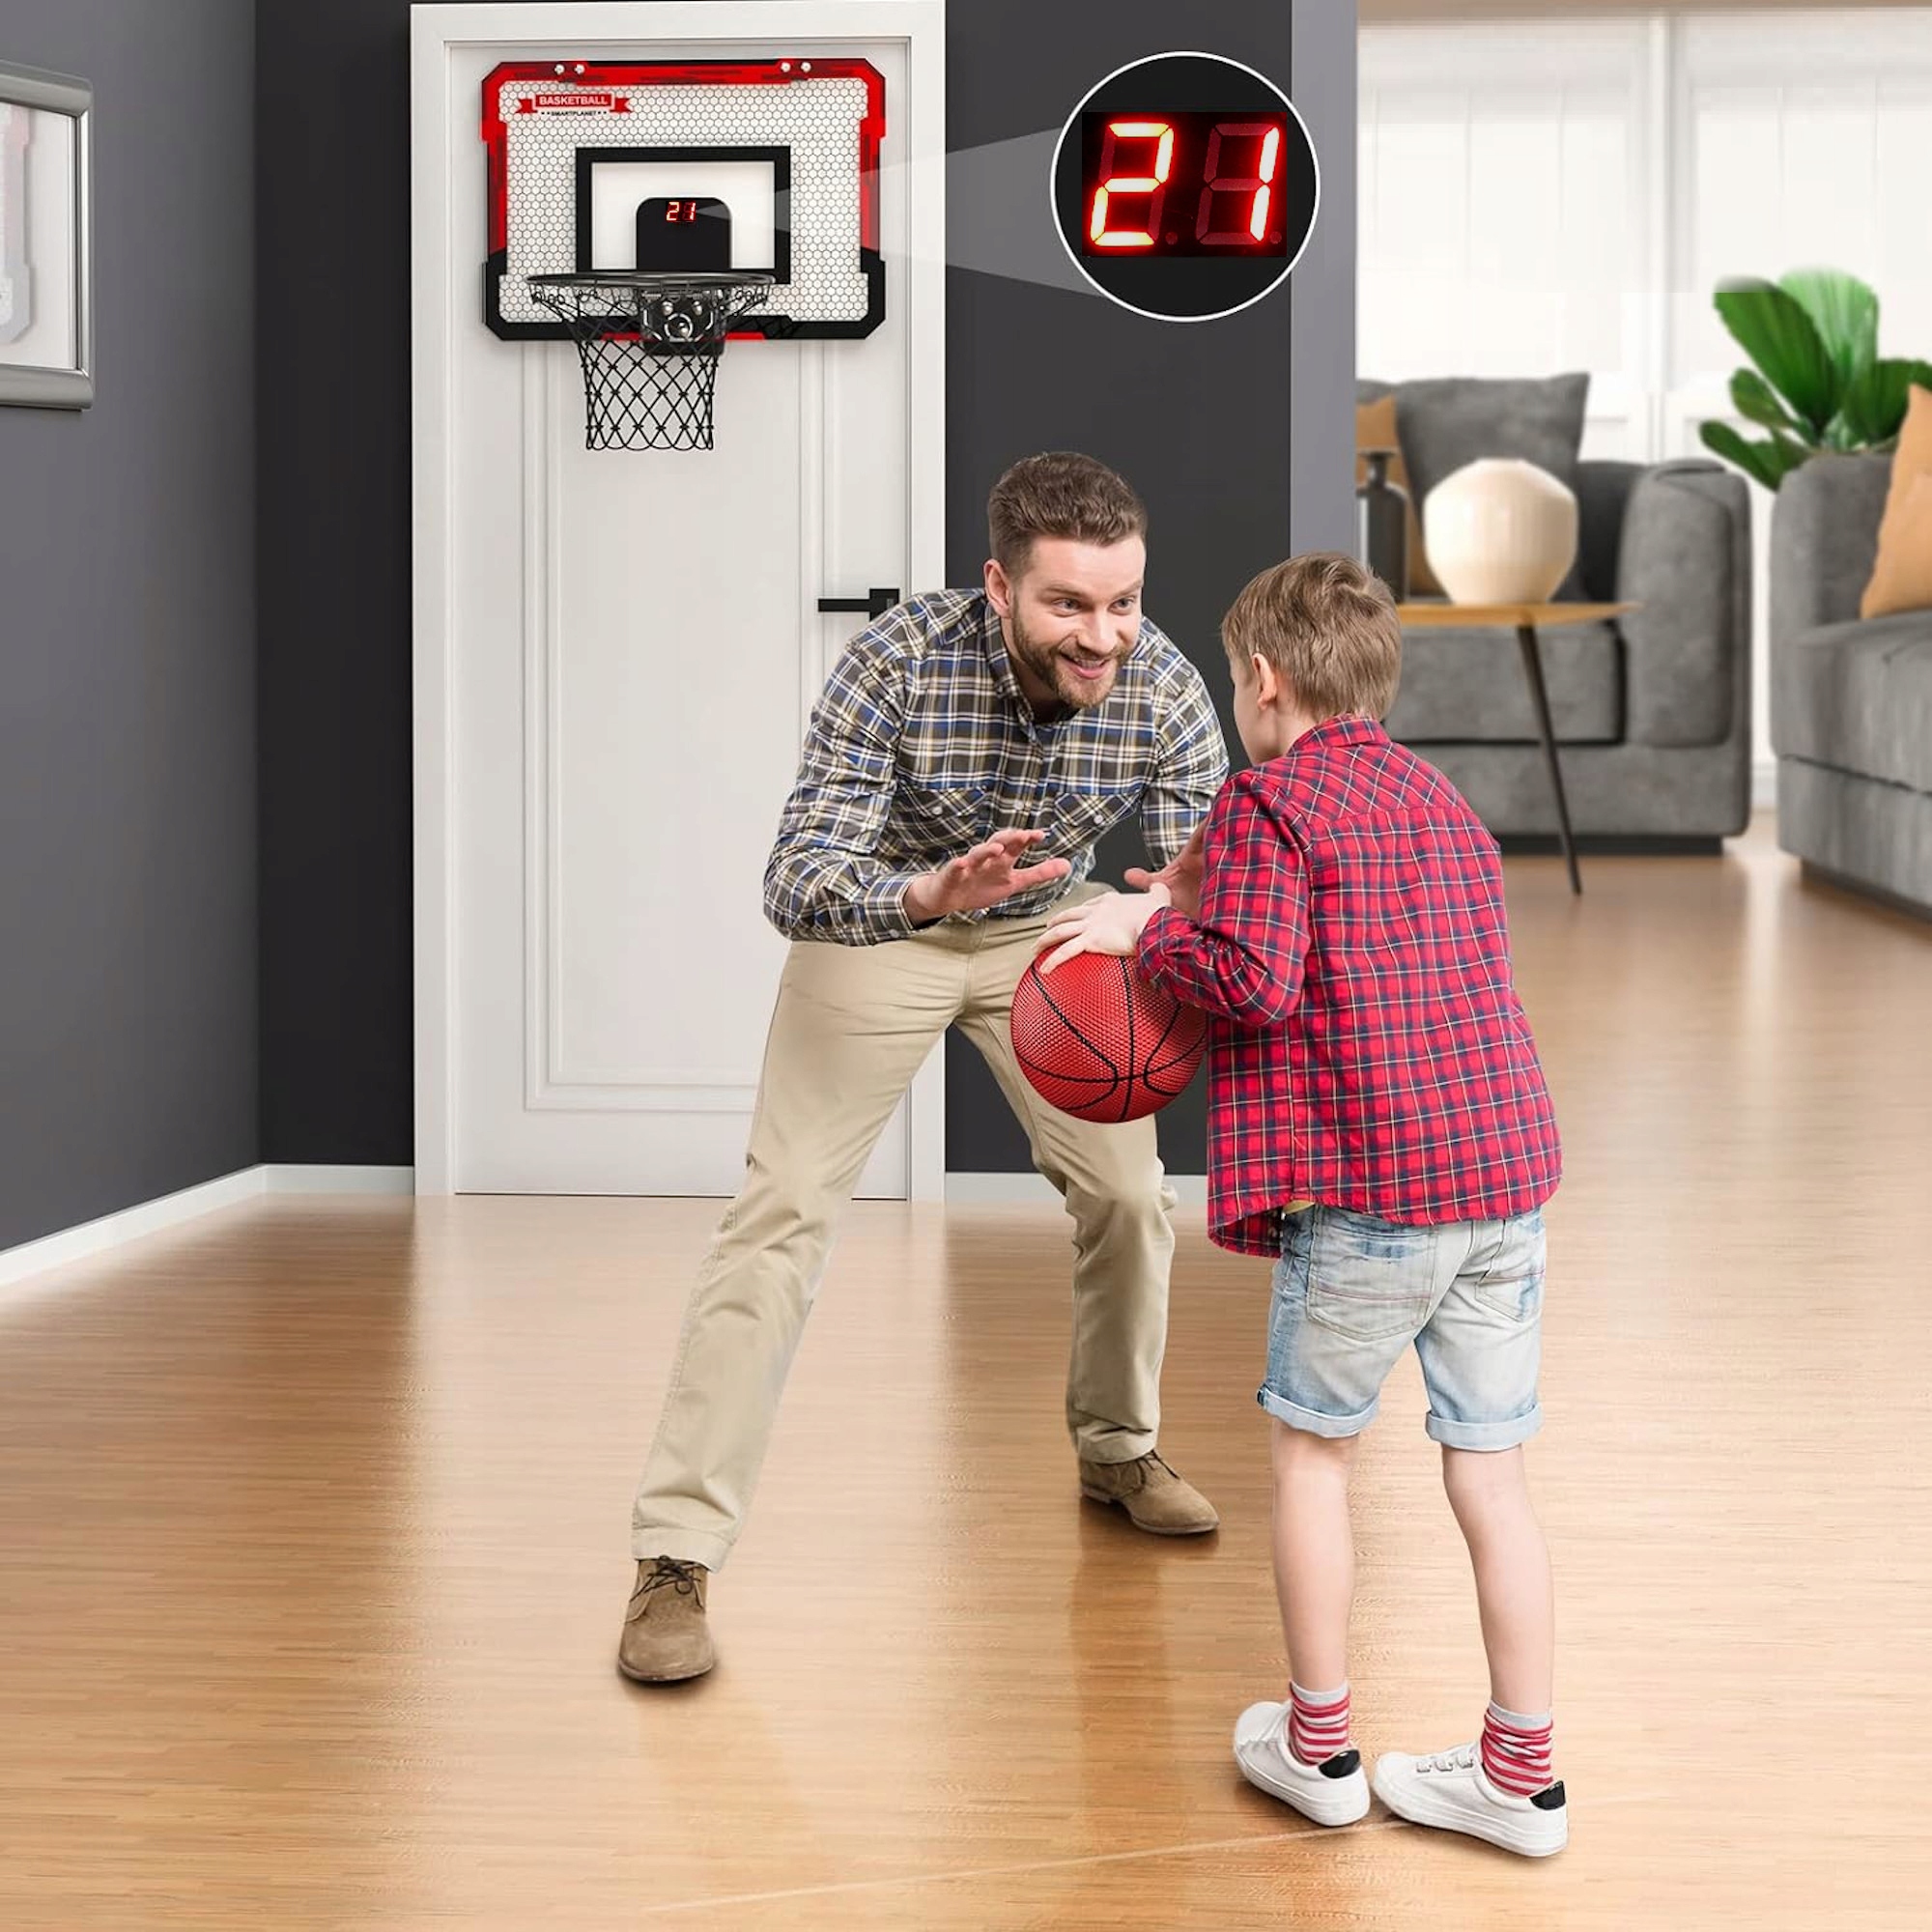 Vaikų krepšinio lenta INTERAKTYVUS TAŠKŲ SKAIČIAVIMO GARSAS 3in1 Maksimalus žaidėjų skaičius Daugiau nei 6